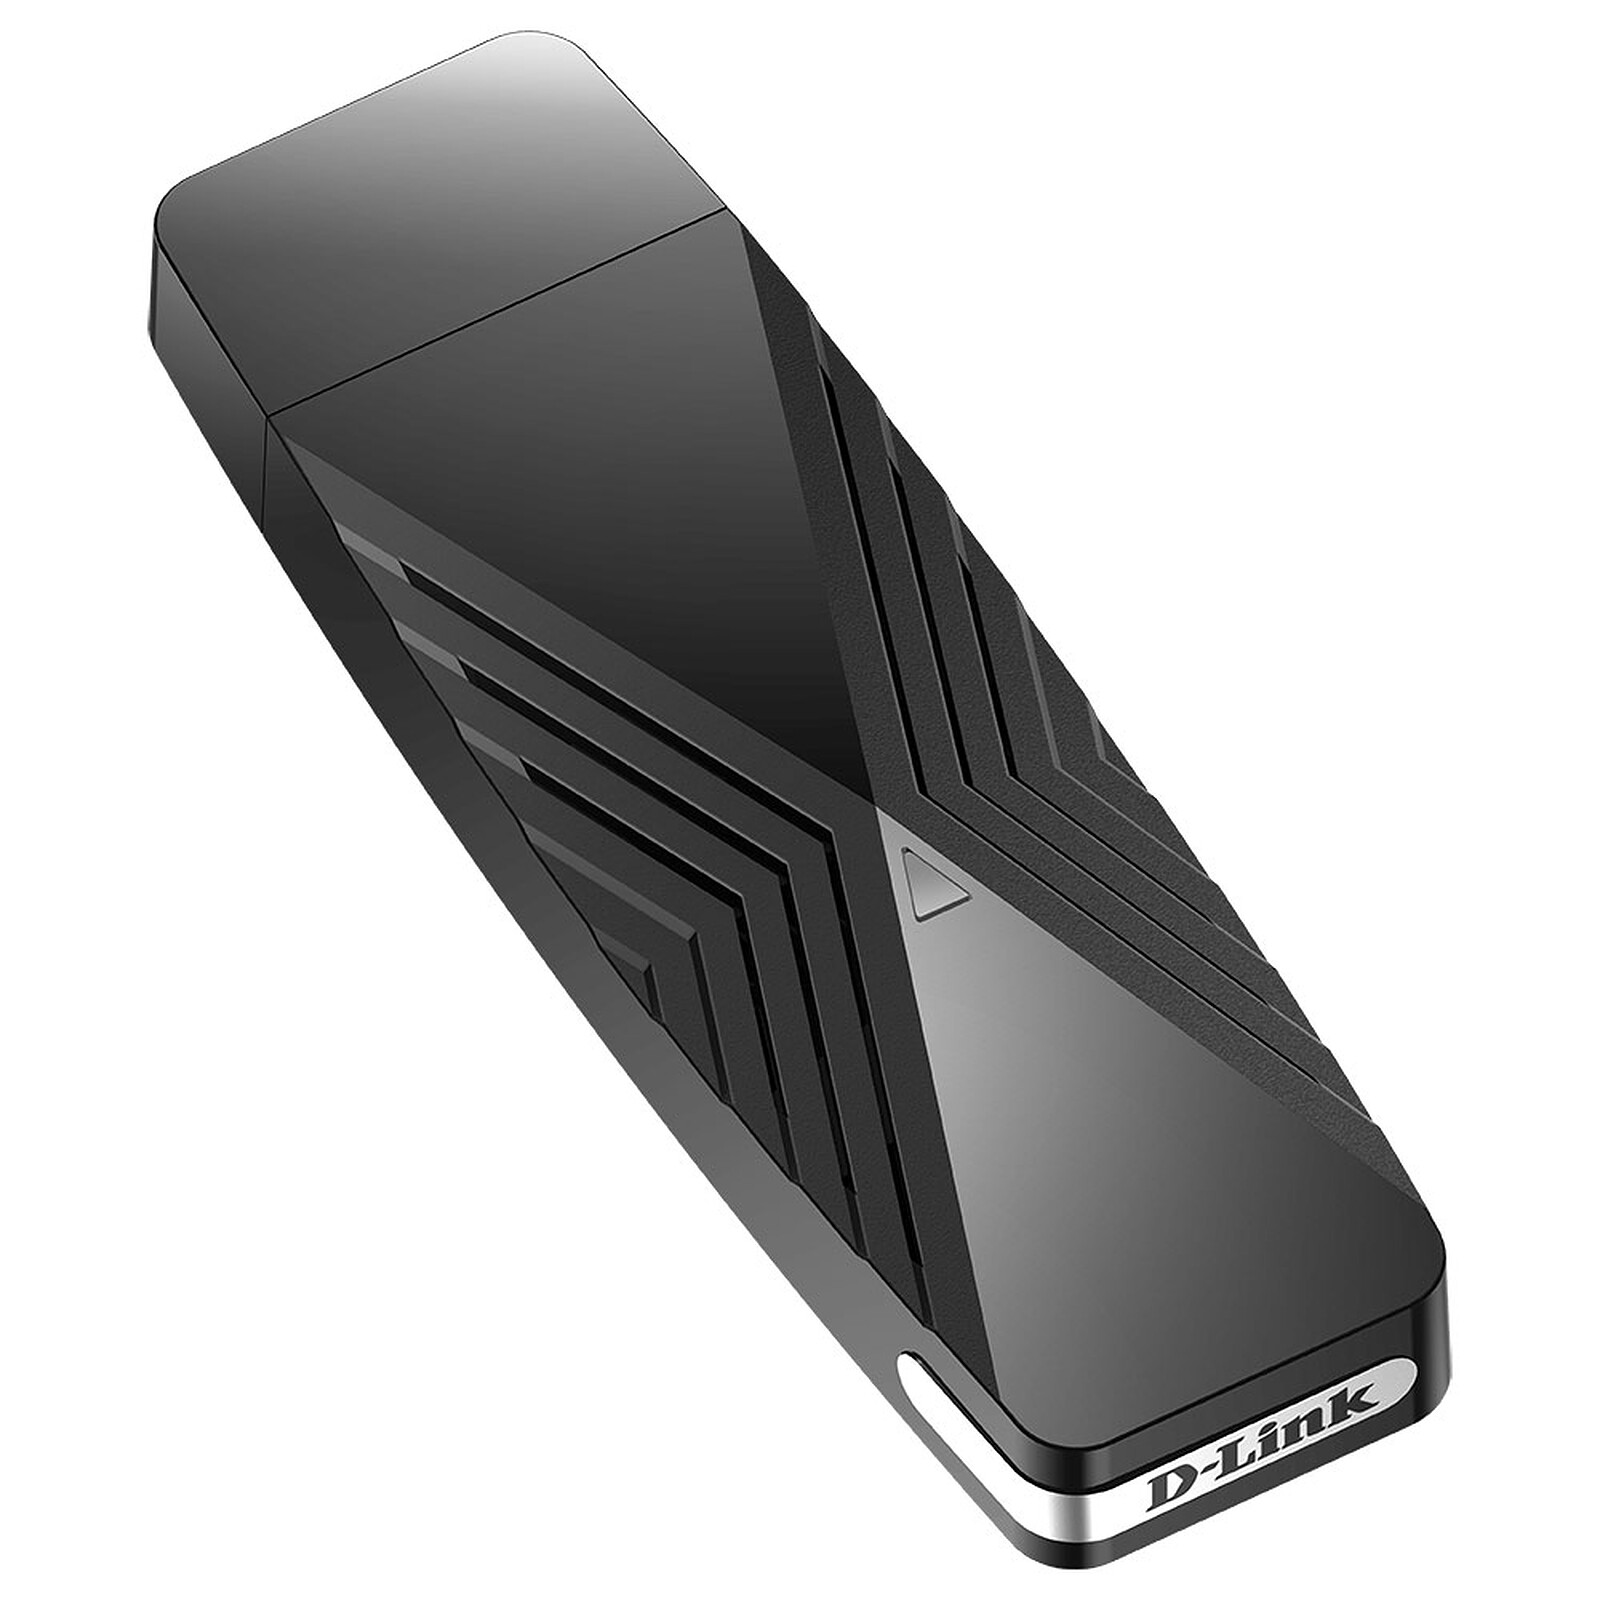 Asus Clé USB WiFi 6 AX - USB-AX56 - Carte réseau Asus